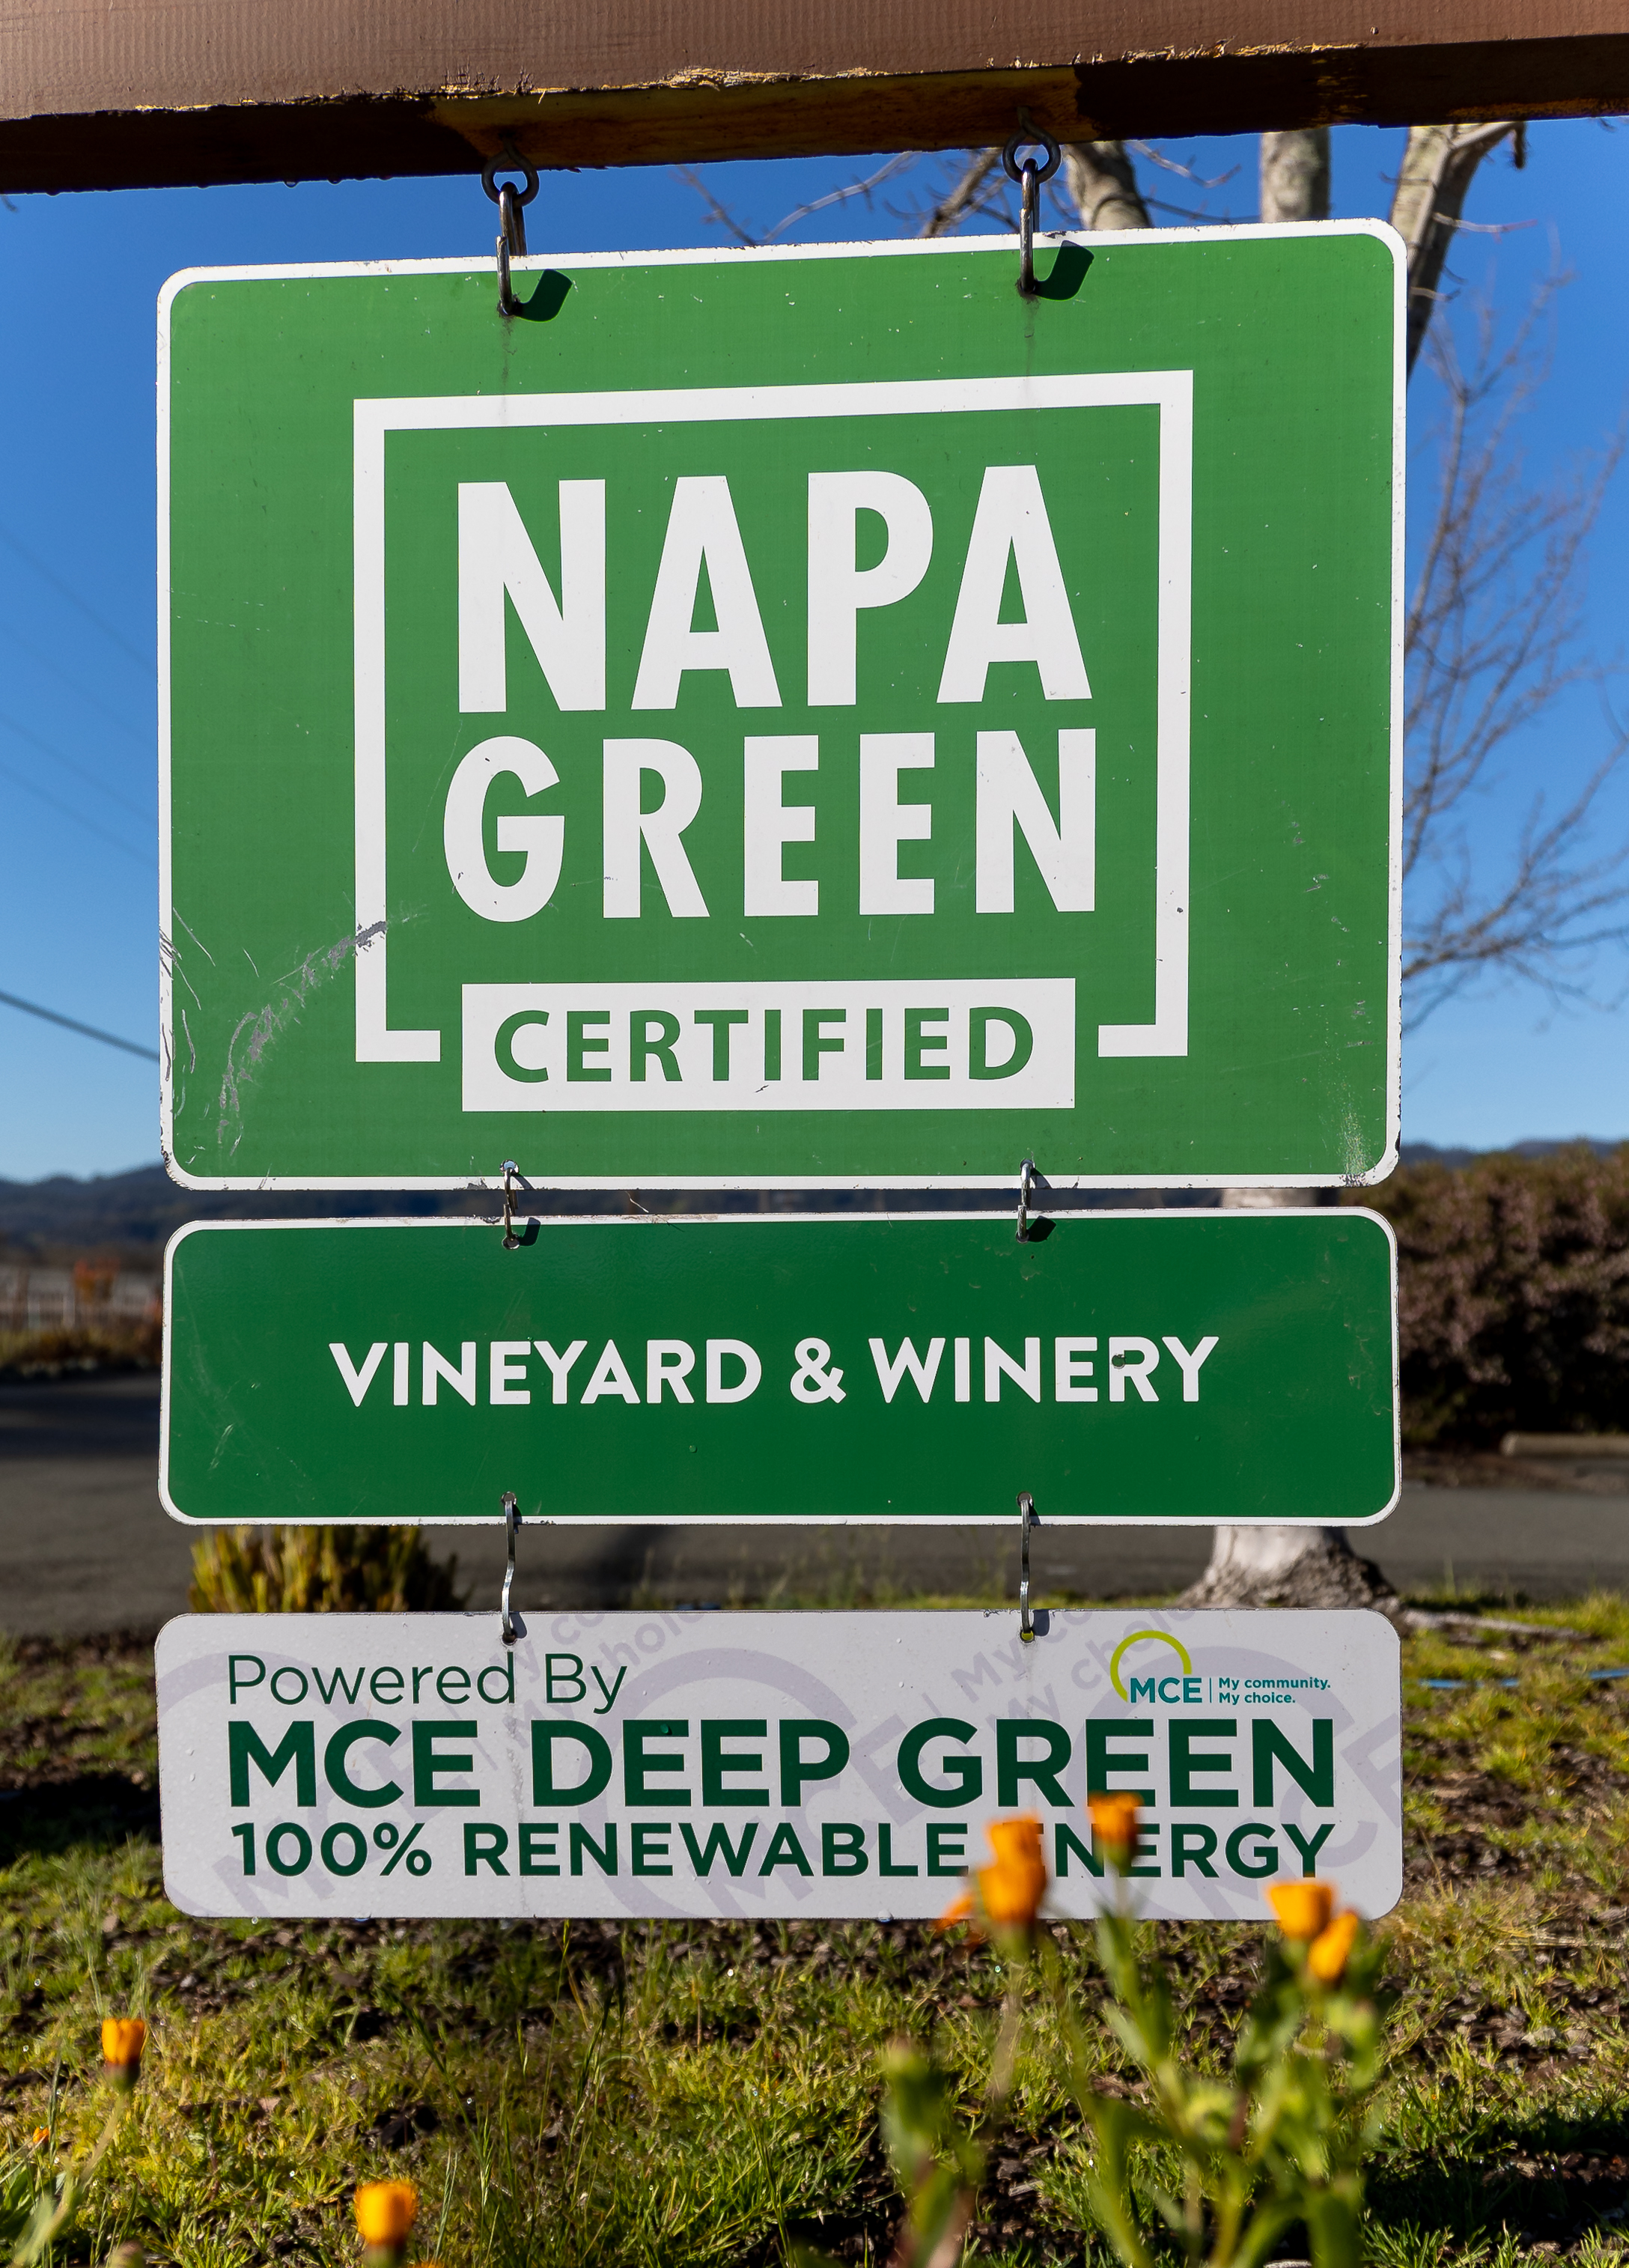 Chimney Rock is Napa Green certified